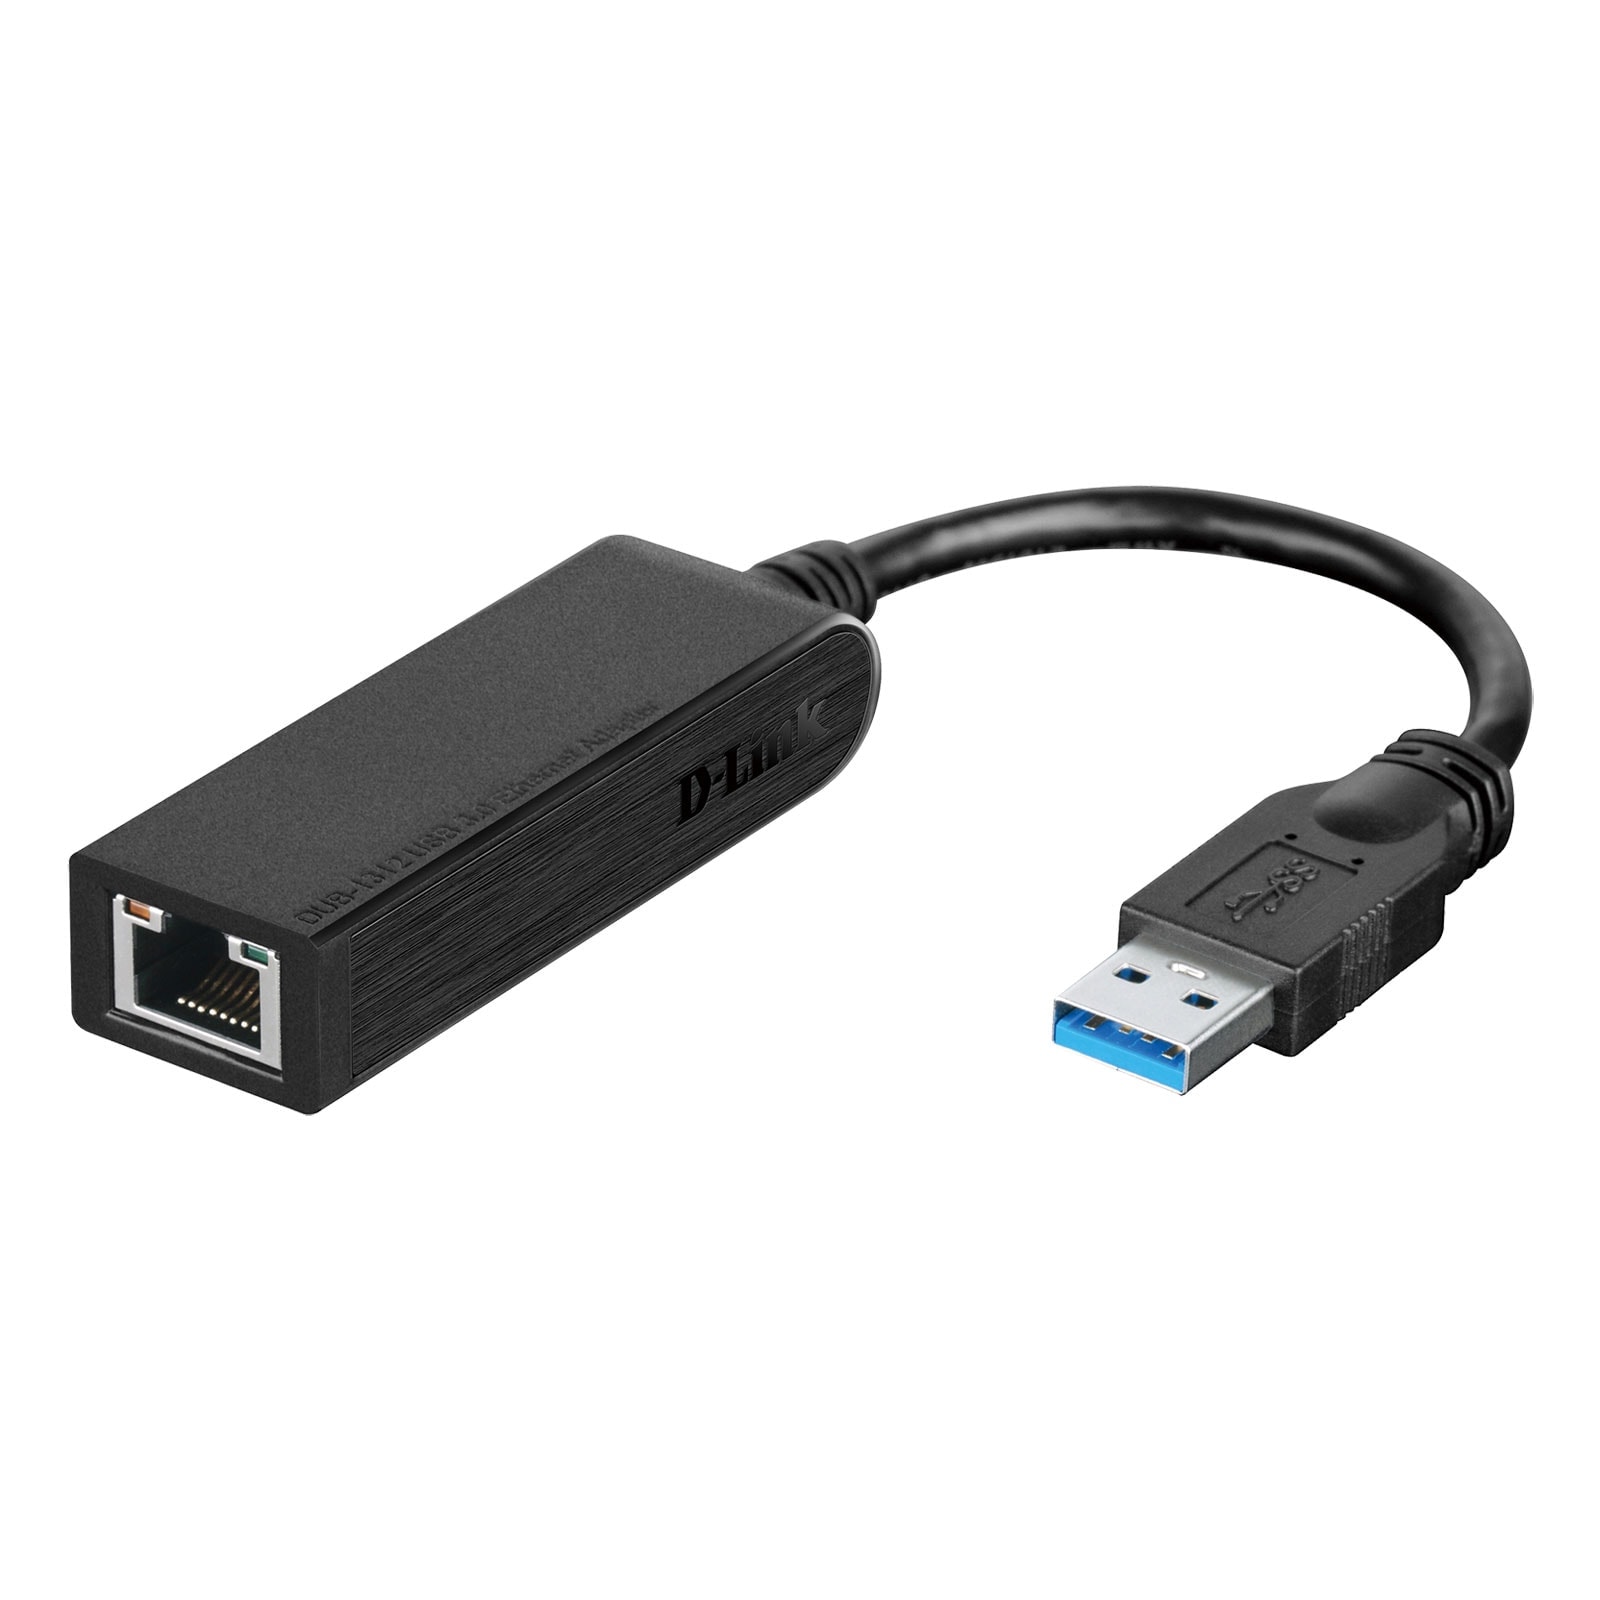 Adaptateur RJ45 USB3.0 Gigabit - DUB-1312 - Connectique réseau - 0